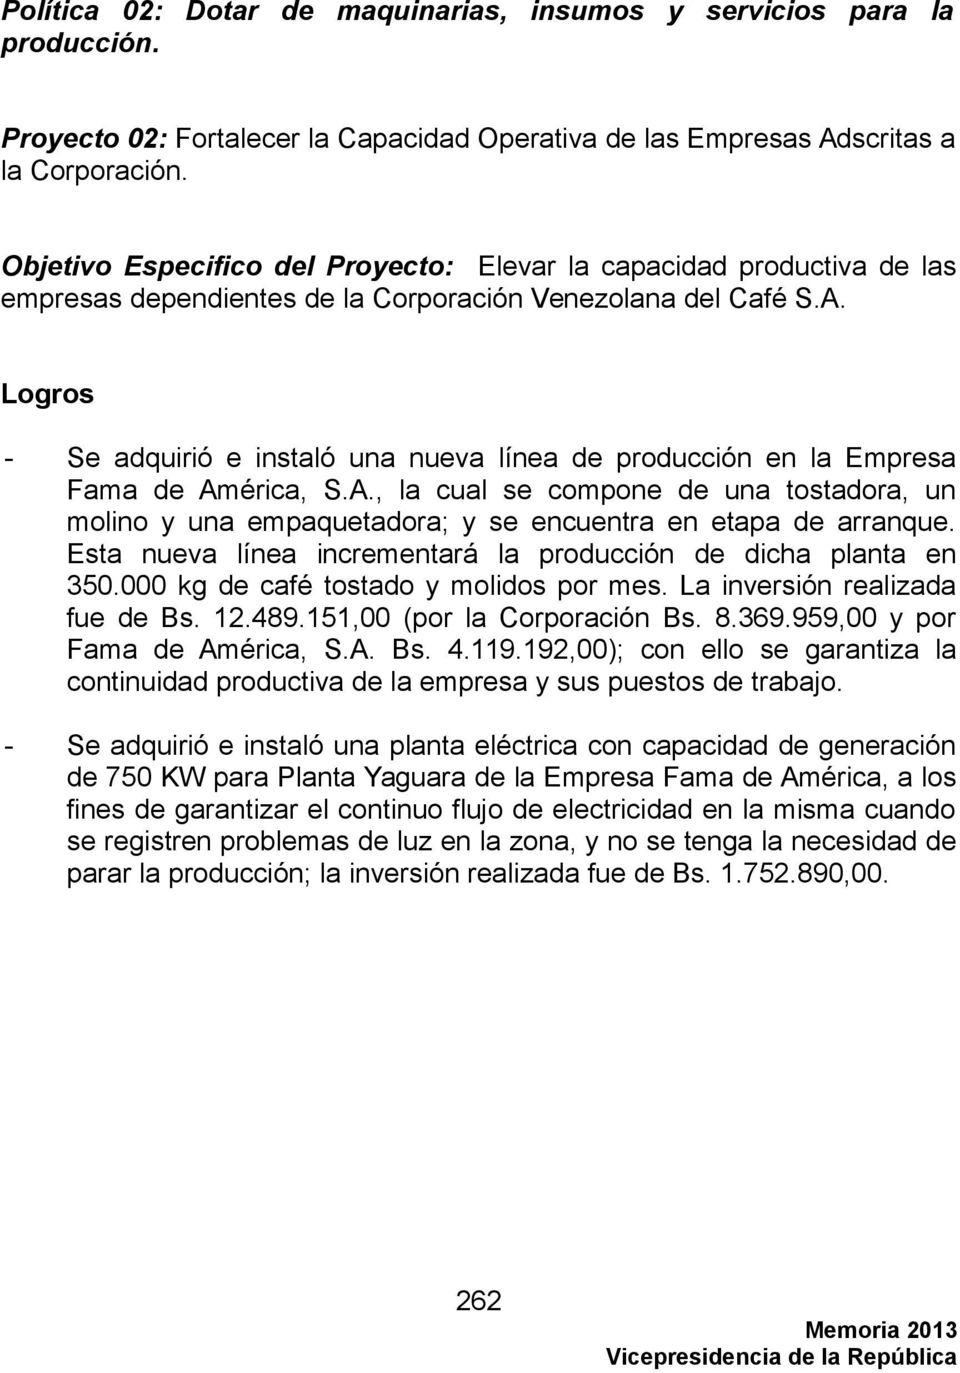 Logros - Se adquirió e instaló una nueva línea de producción en la Empresa Fama de América, S.A., la cual se compone de una tostadora, un molino y una empaquetadora; y se encuentra en etapa de arranque.